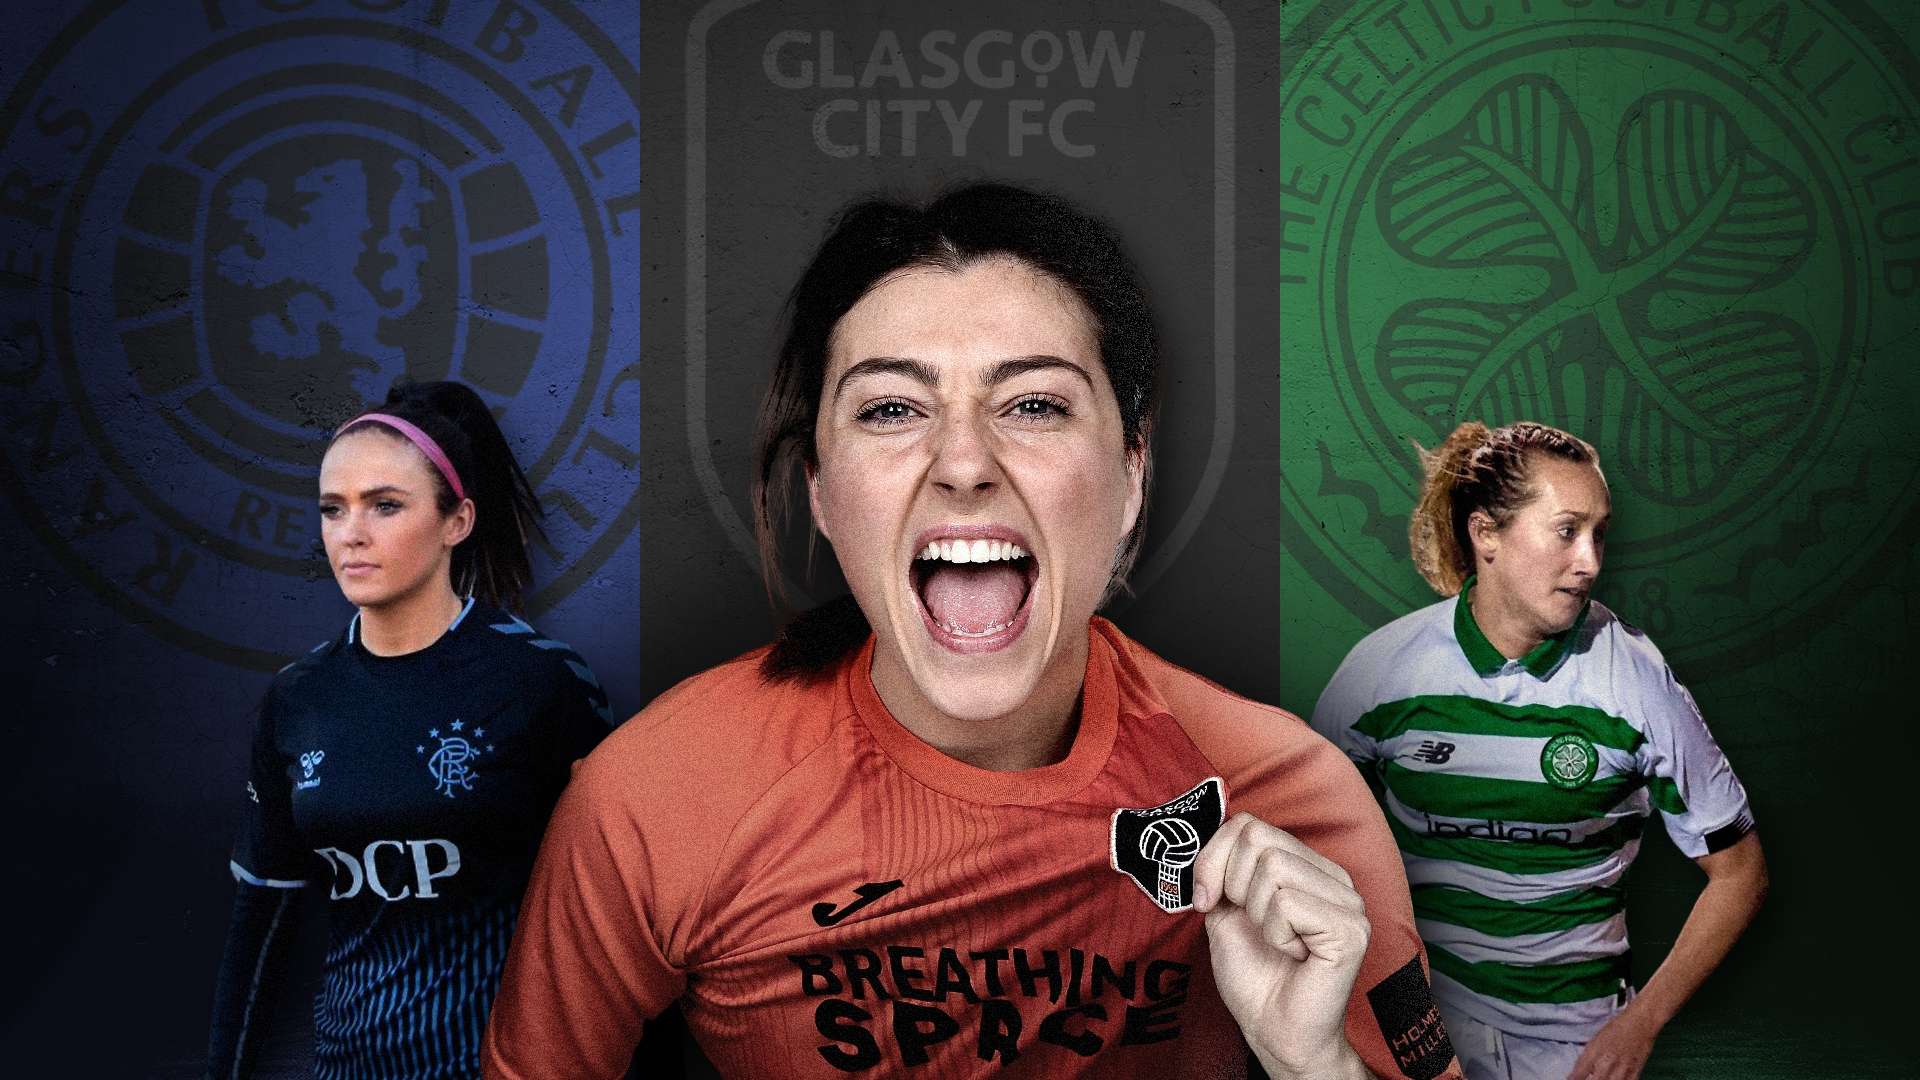 Glasgow City Celtic Rangers GFX